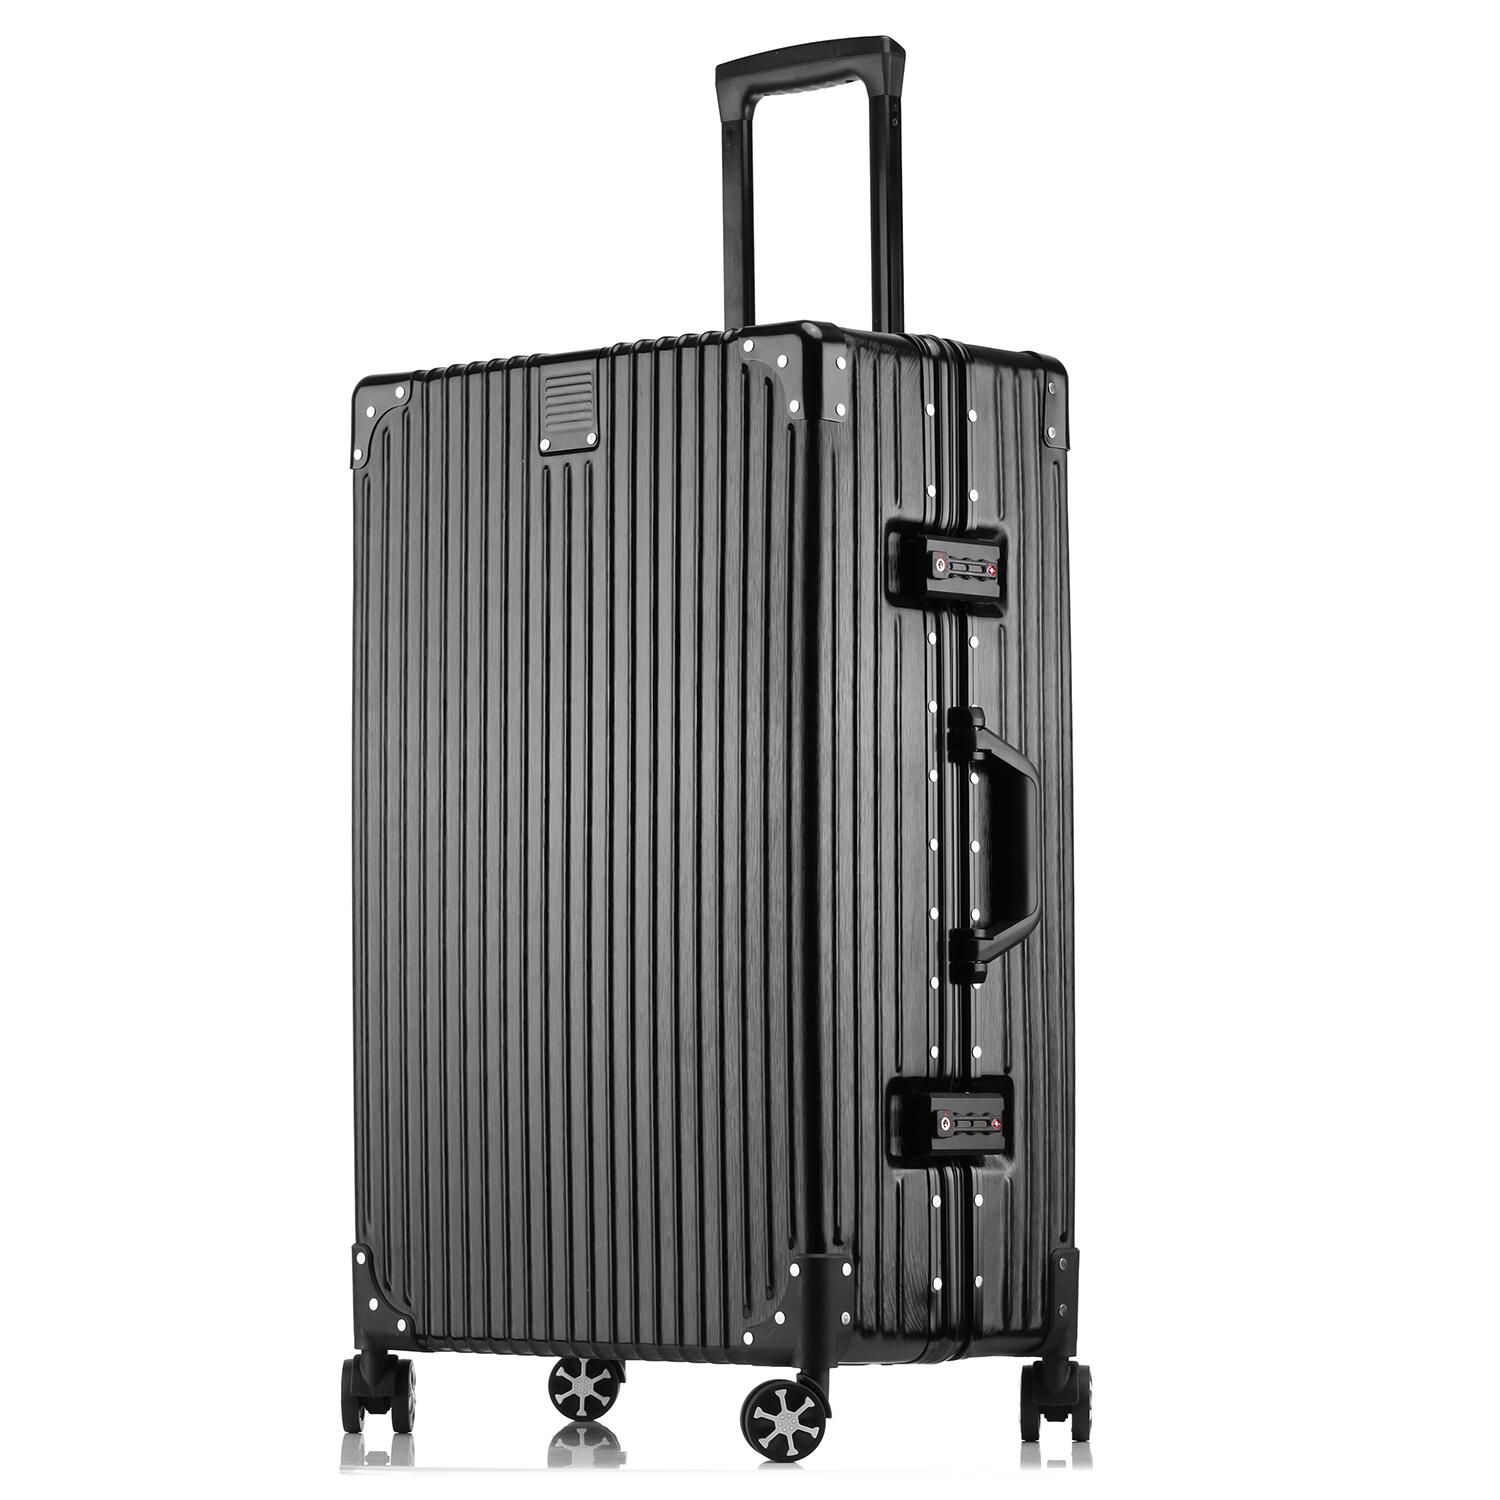 スーツケース キャリーバッグ キャリーケース トランクケース トロリーケース アルミフレーム Lサイズ 軽量 ダブル 大型 大容量 空港 旅行カバン 世界基準 TSAロック ダイヤルロック 送料無料